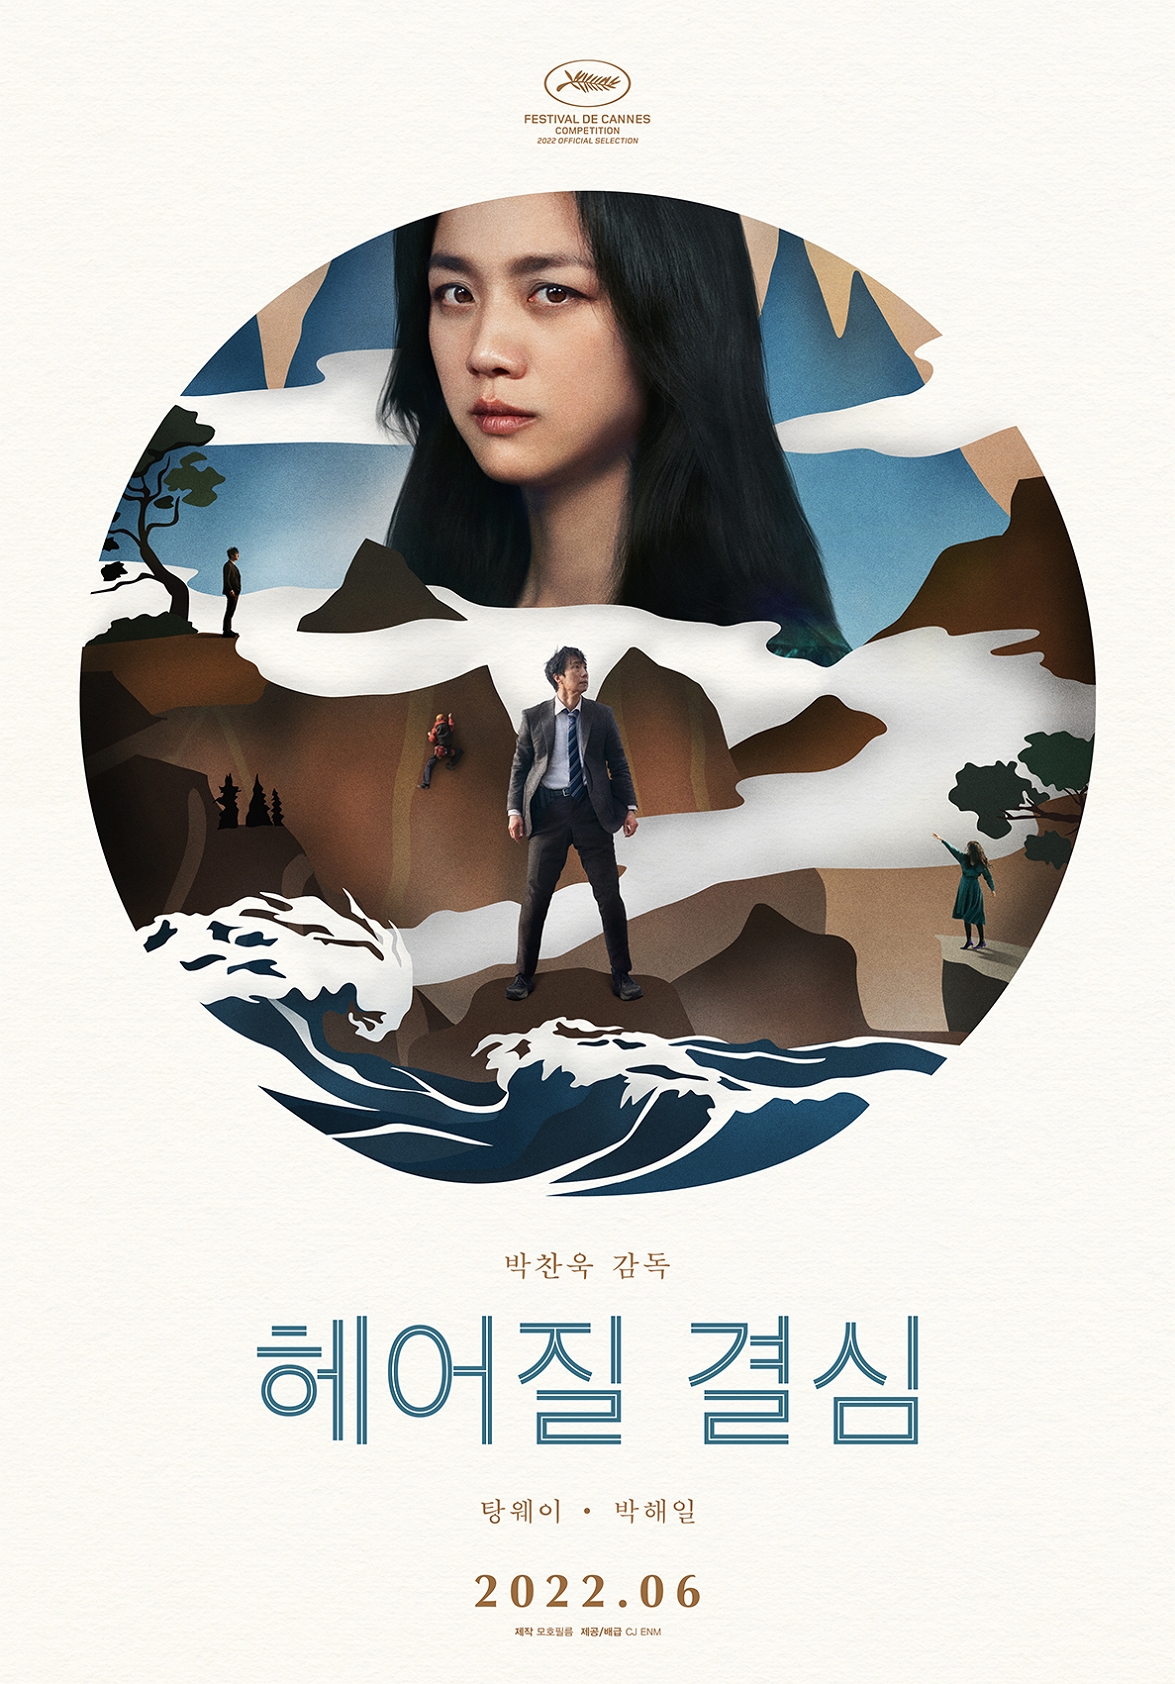 박찬욱 '헤어질 결심' 전 세계서 본다… 192개국 선판매